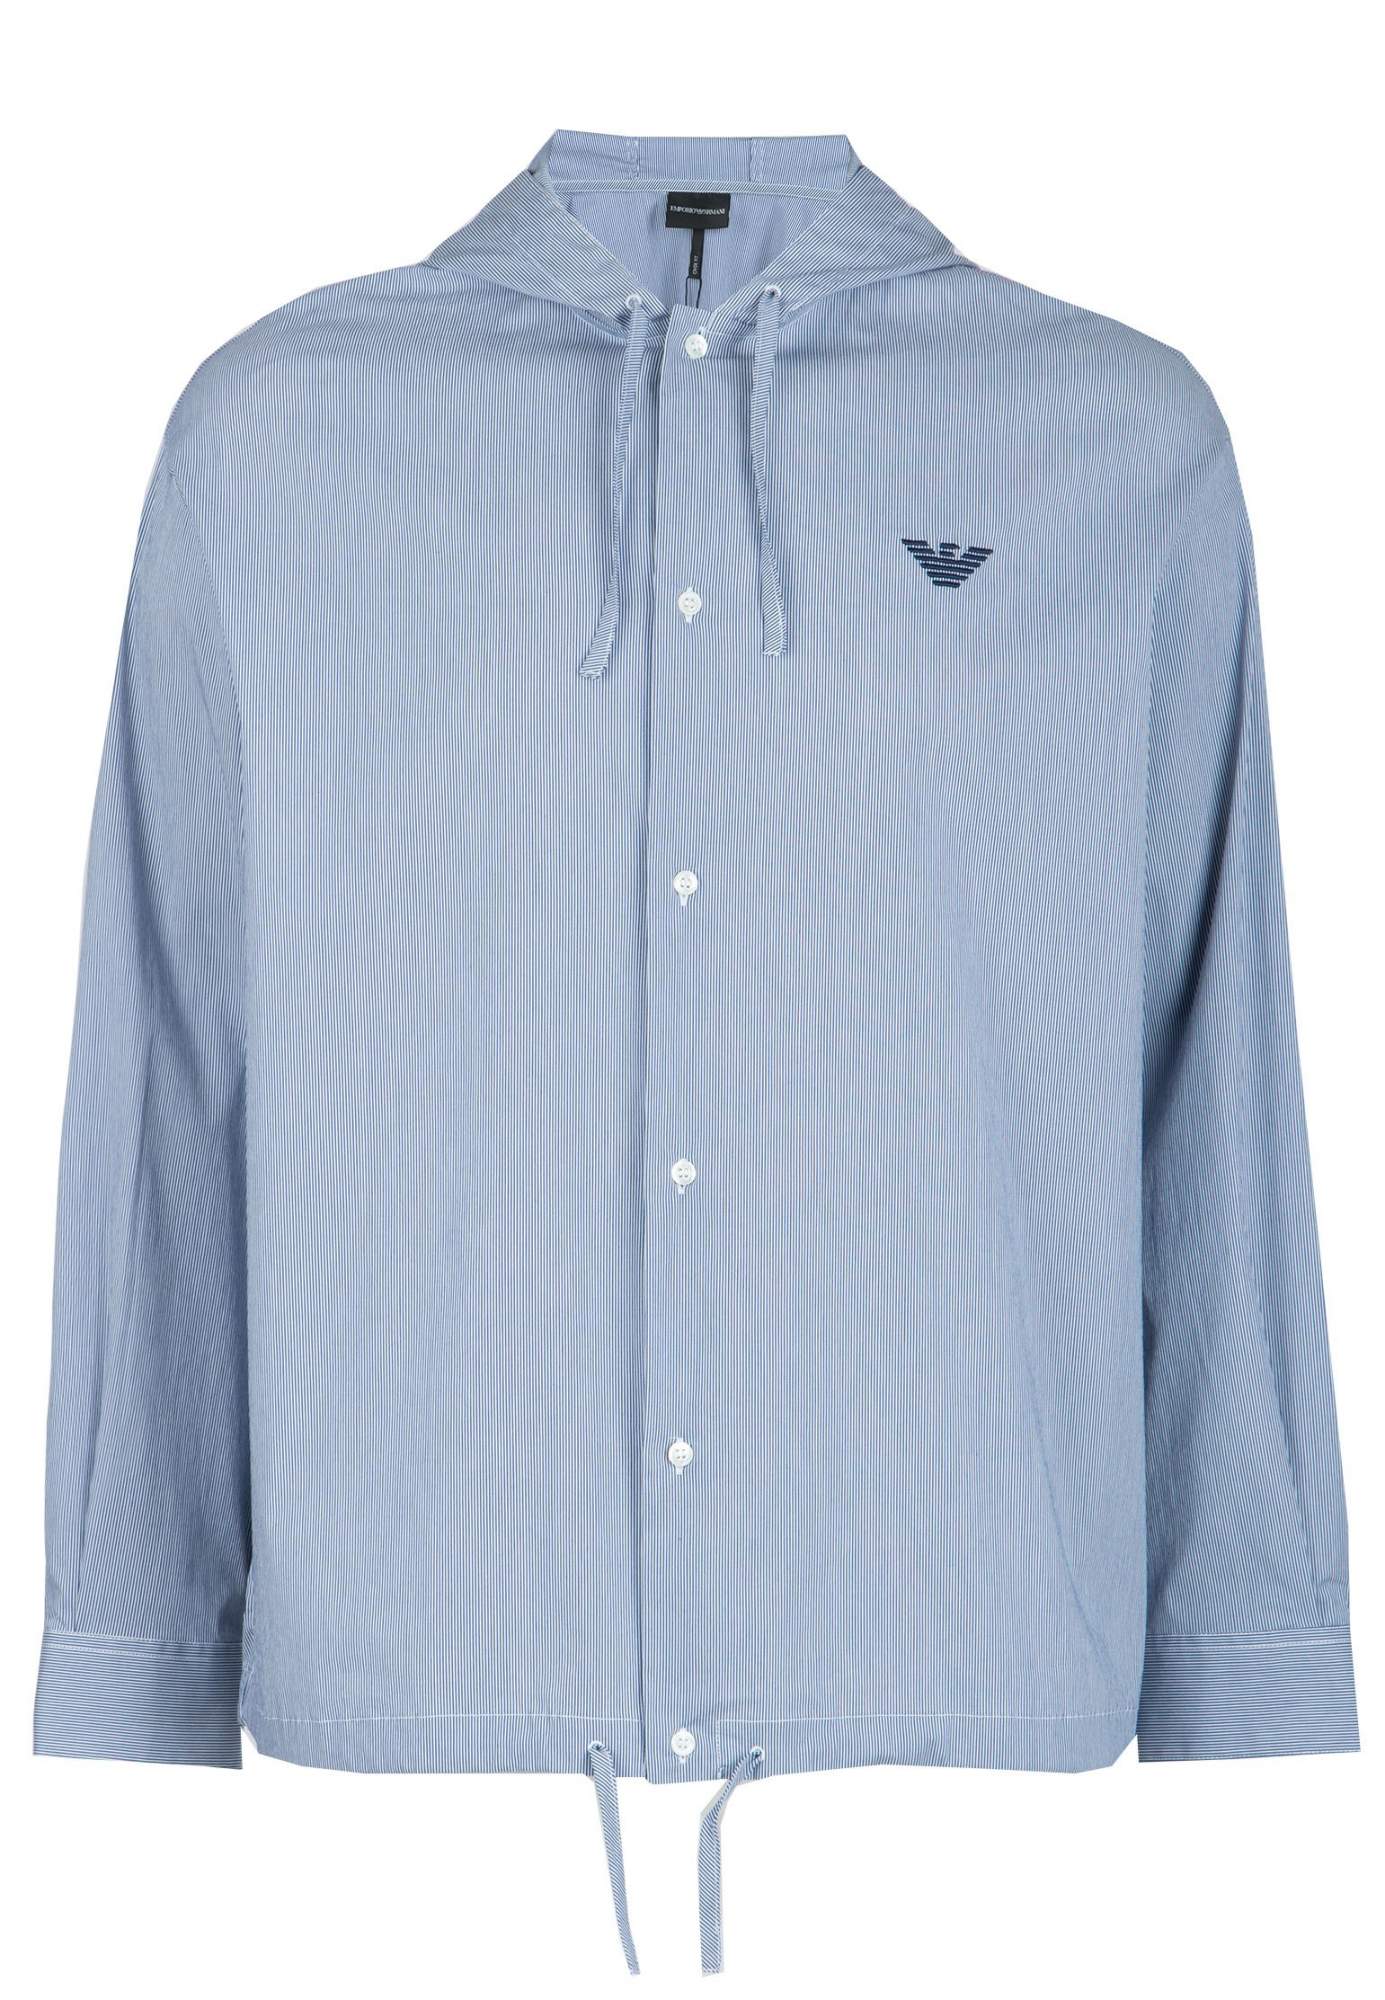 Рубашка мужская Emporio Armani 105661 голубая XL